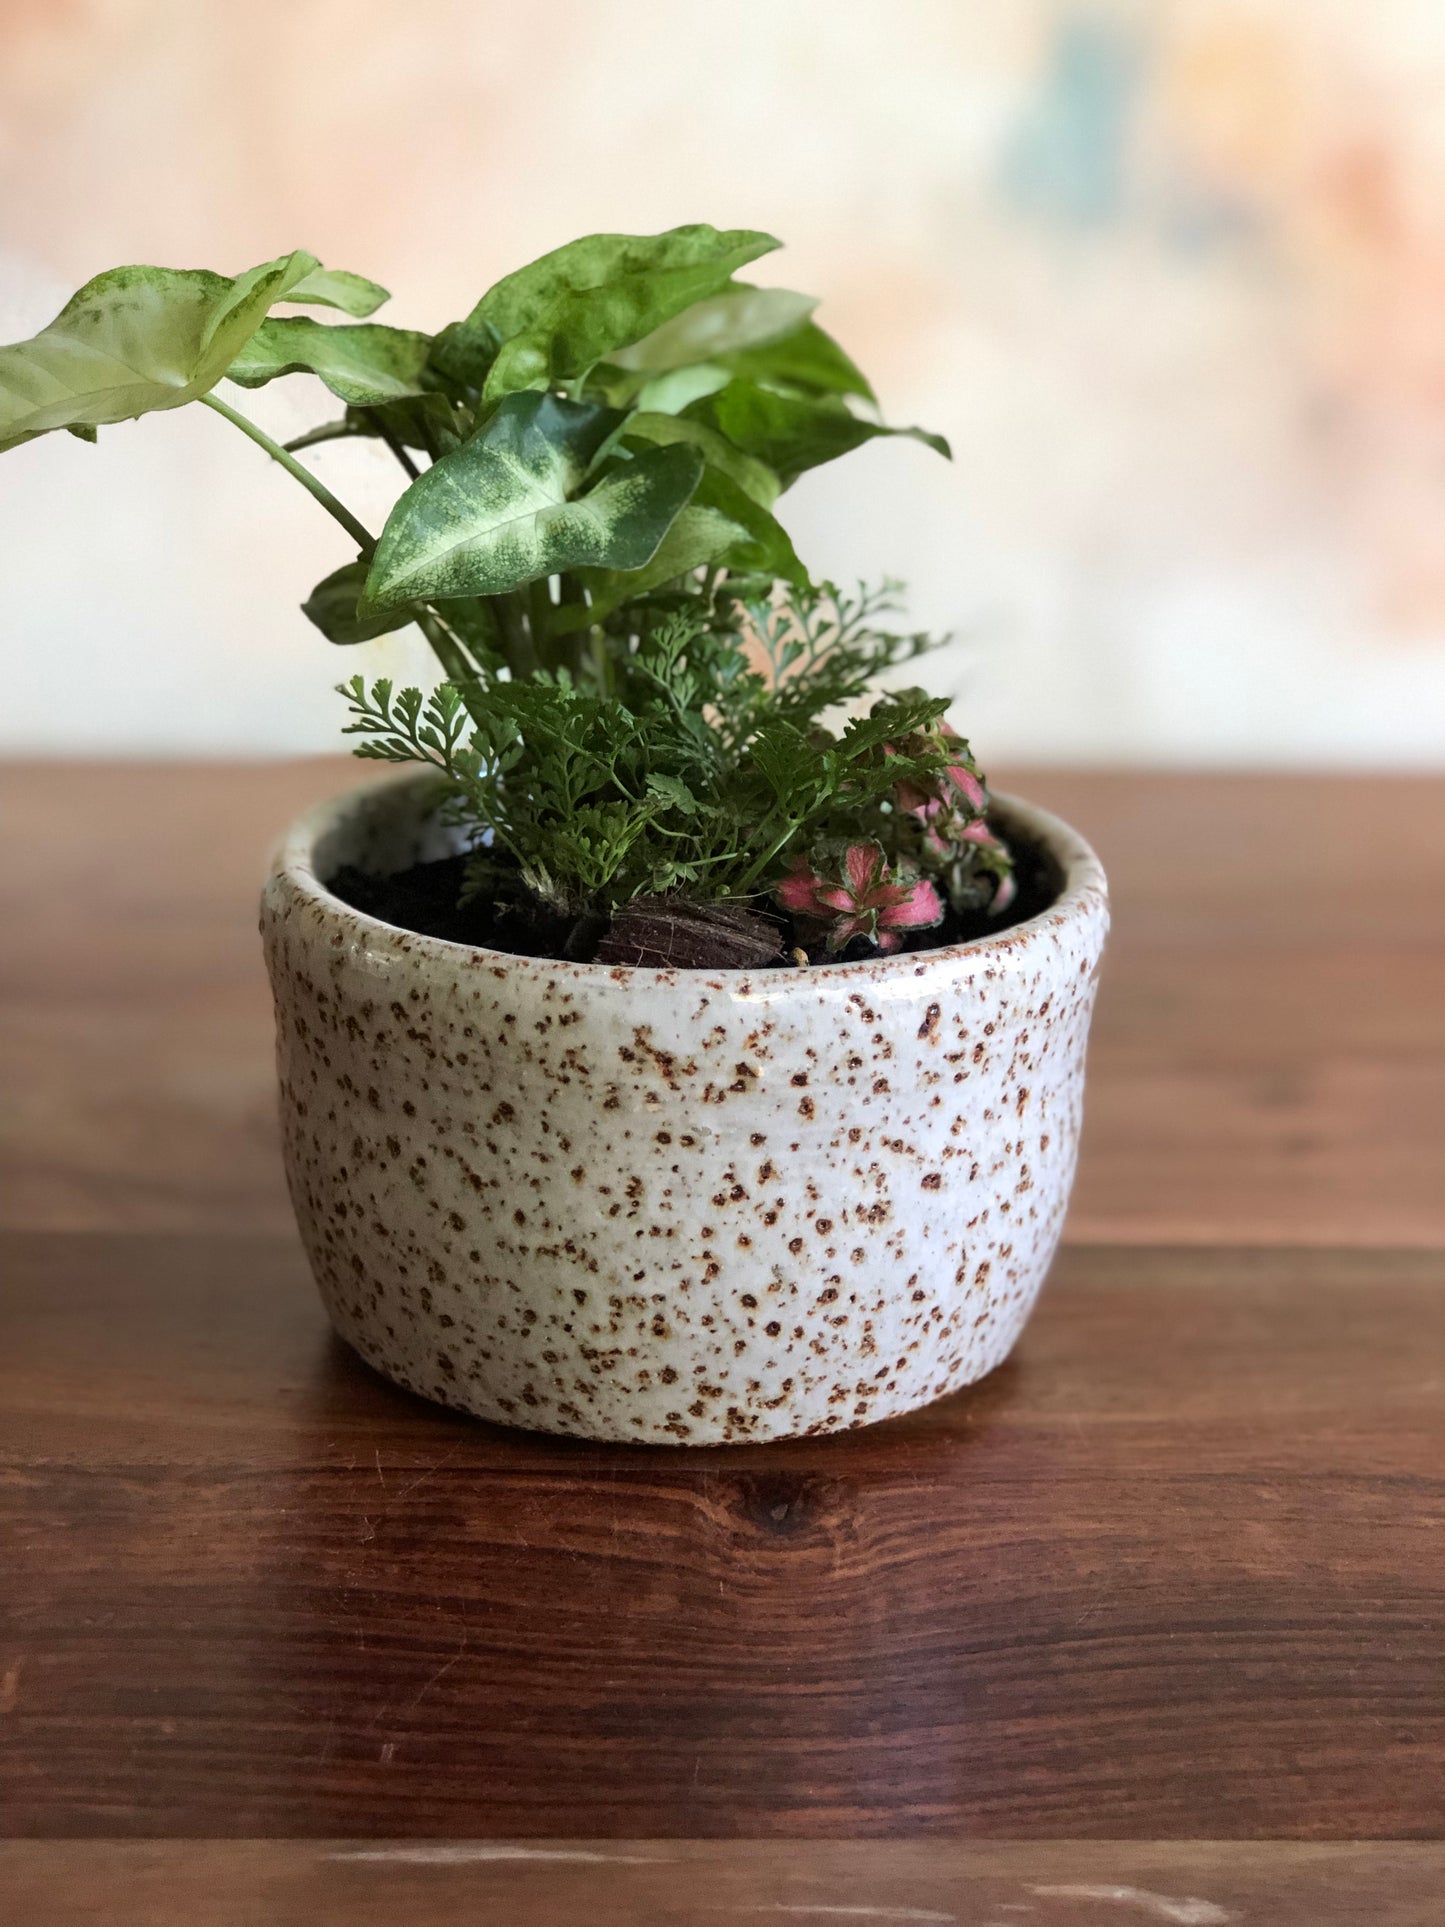 Teal green planter or vase no.2